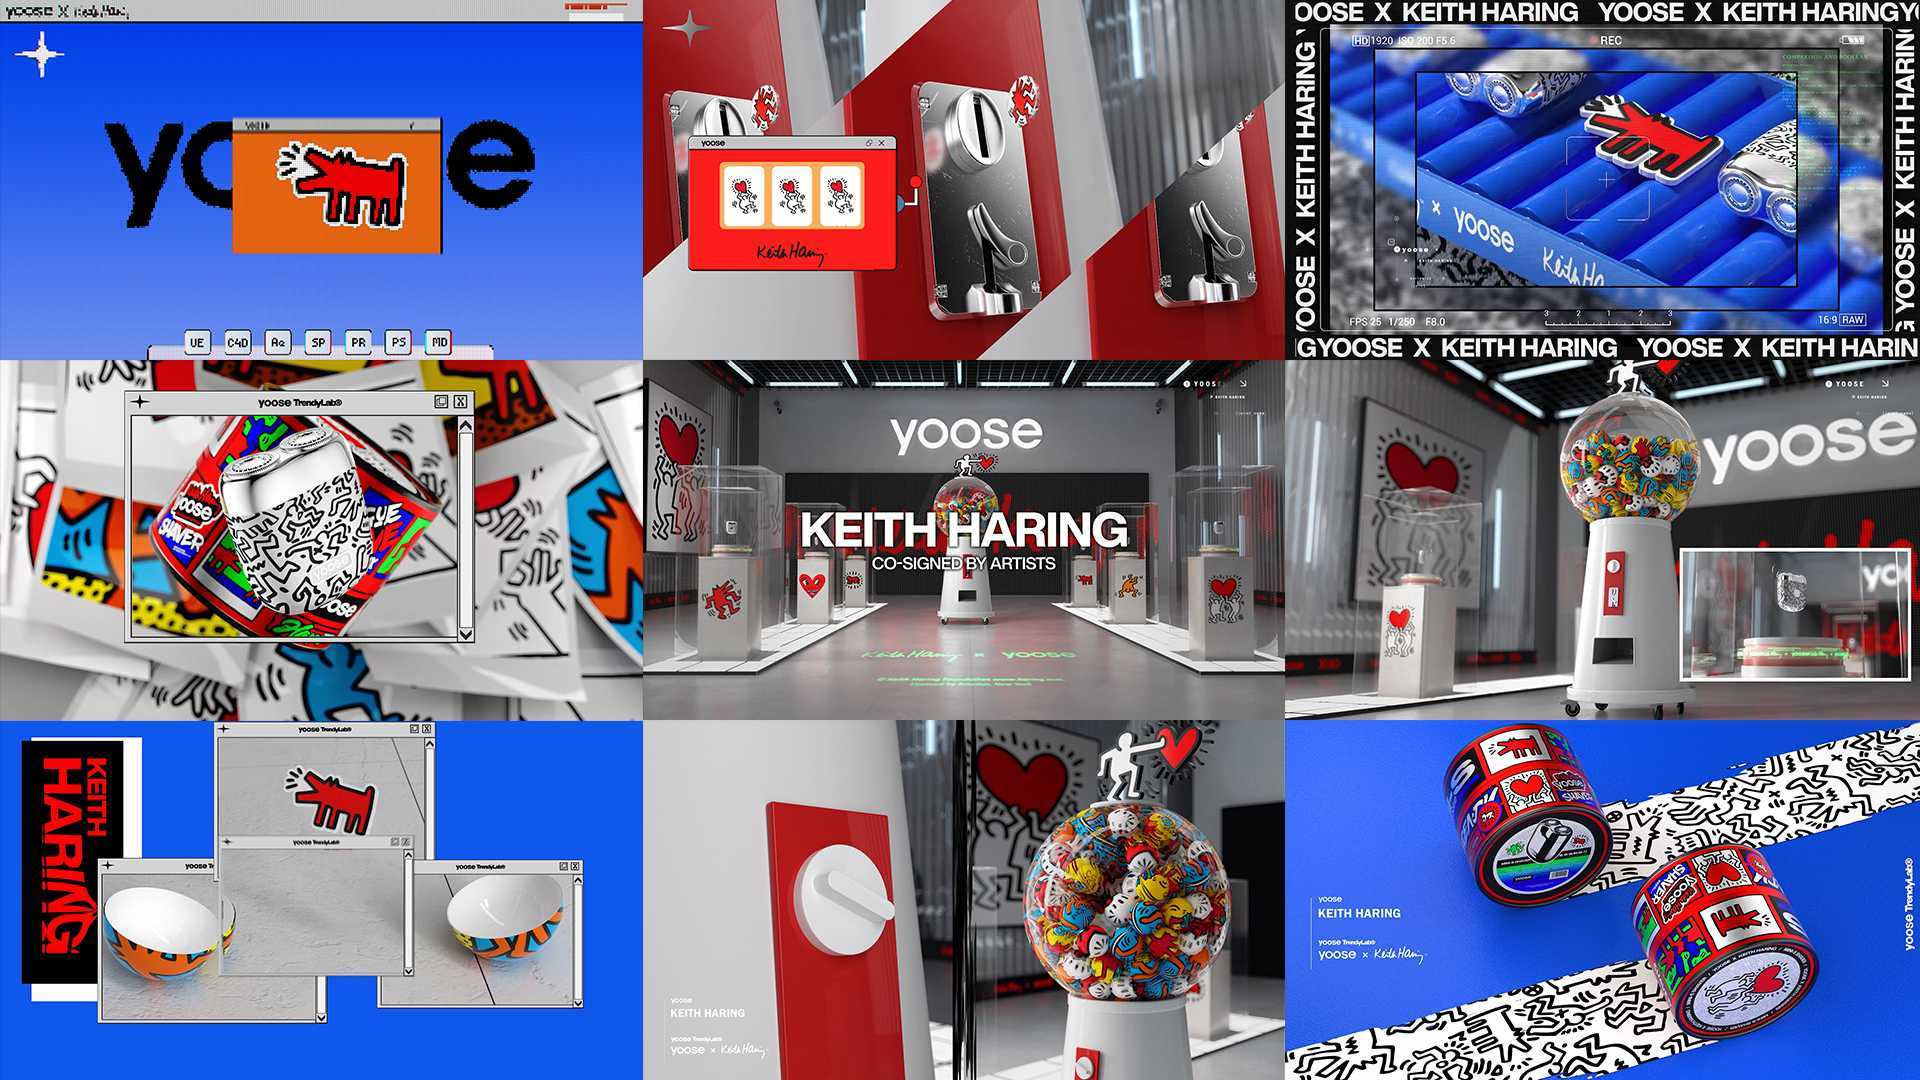 yoose® x Keith Haring ™艺术家联名短片